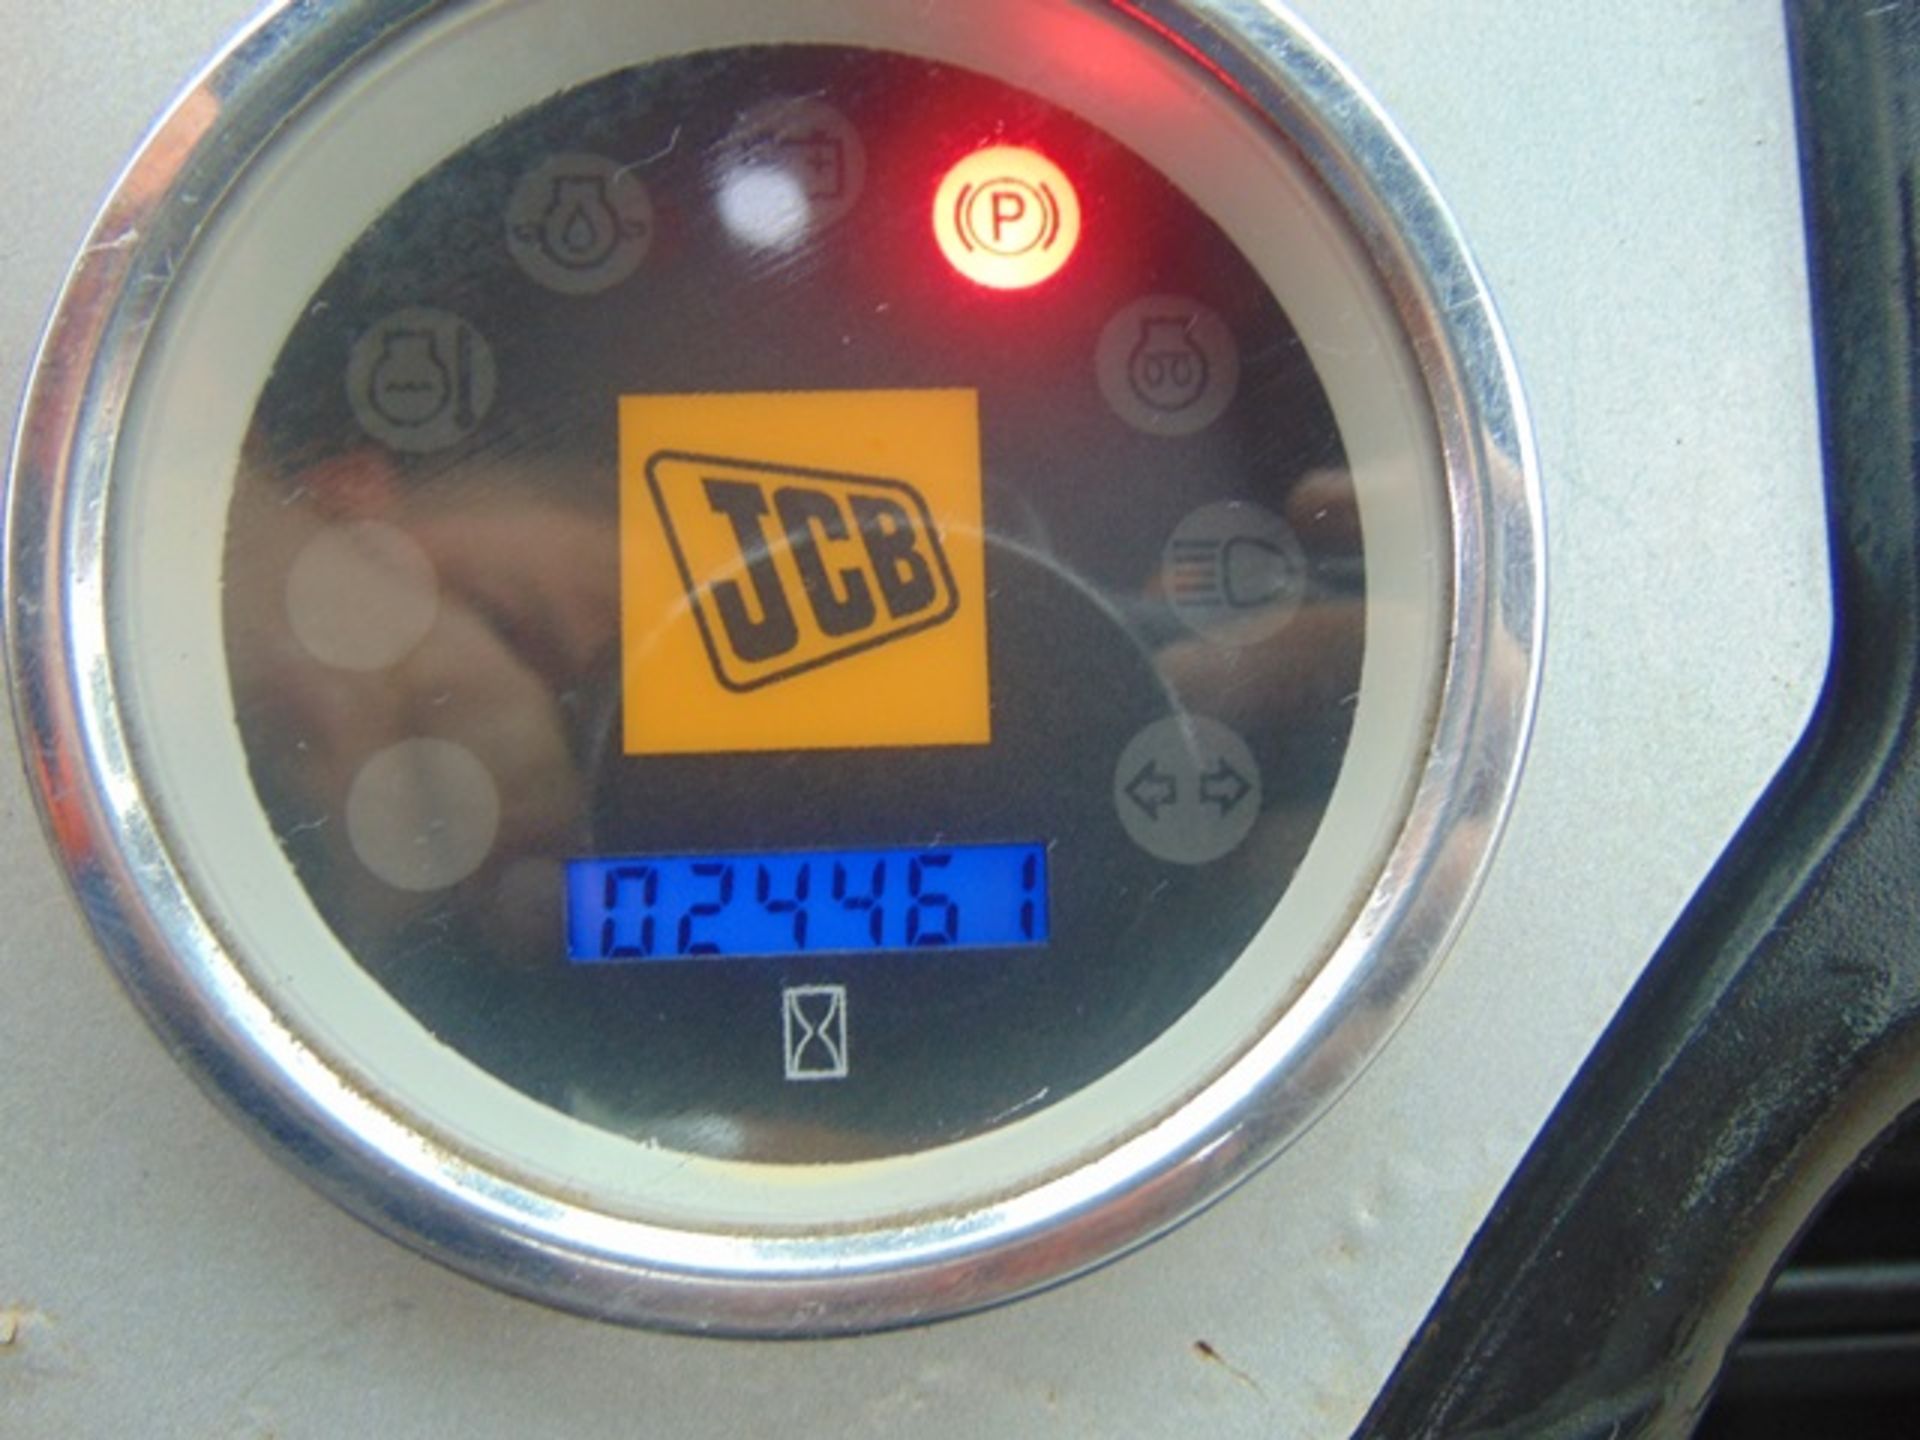 2015 JCB Workmax 4WD Diesel Utility Vehicle UTV - Image 18 of 18